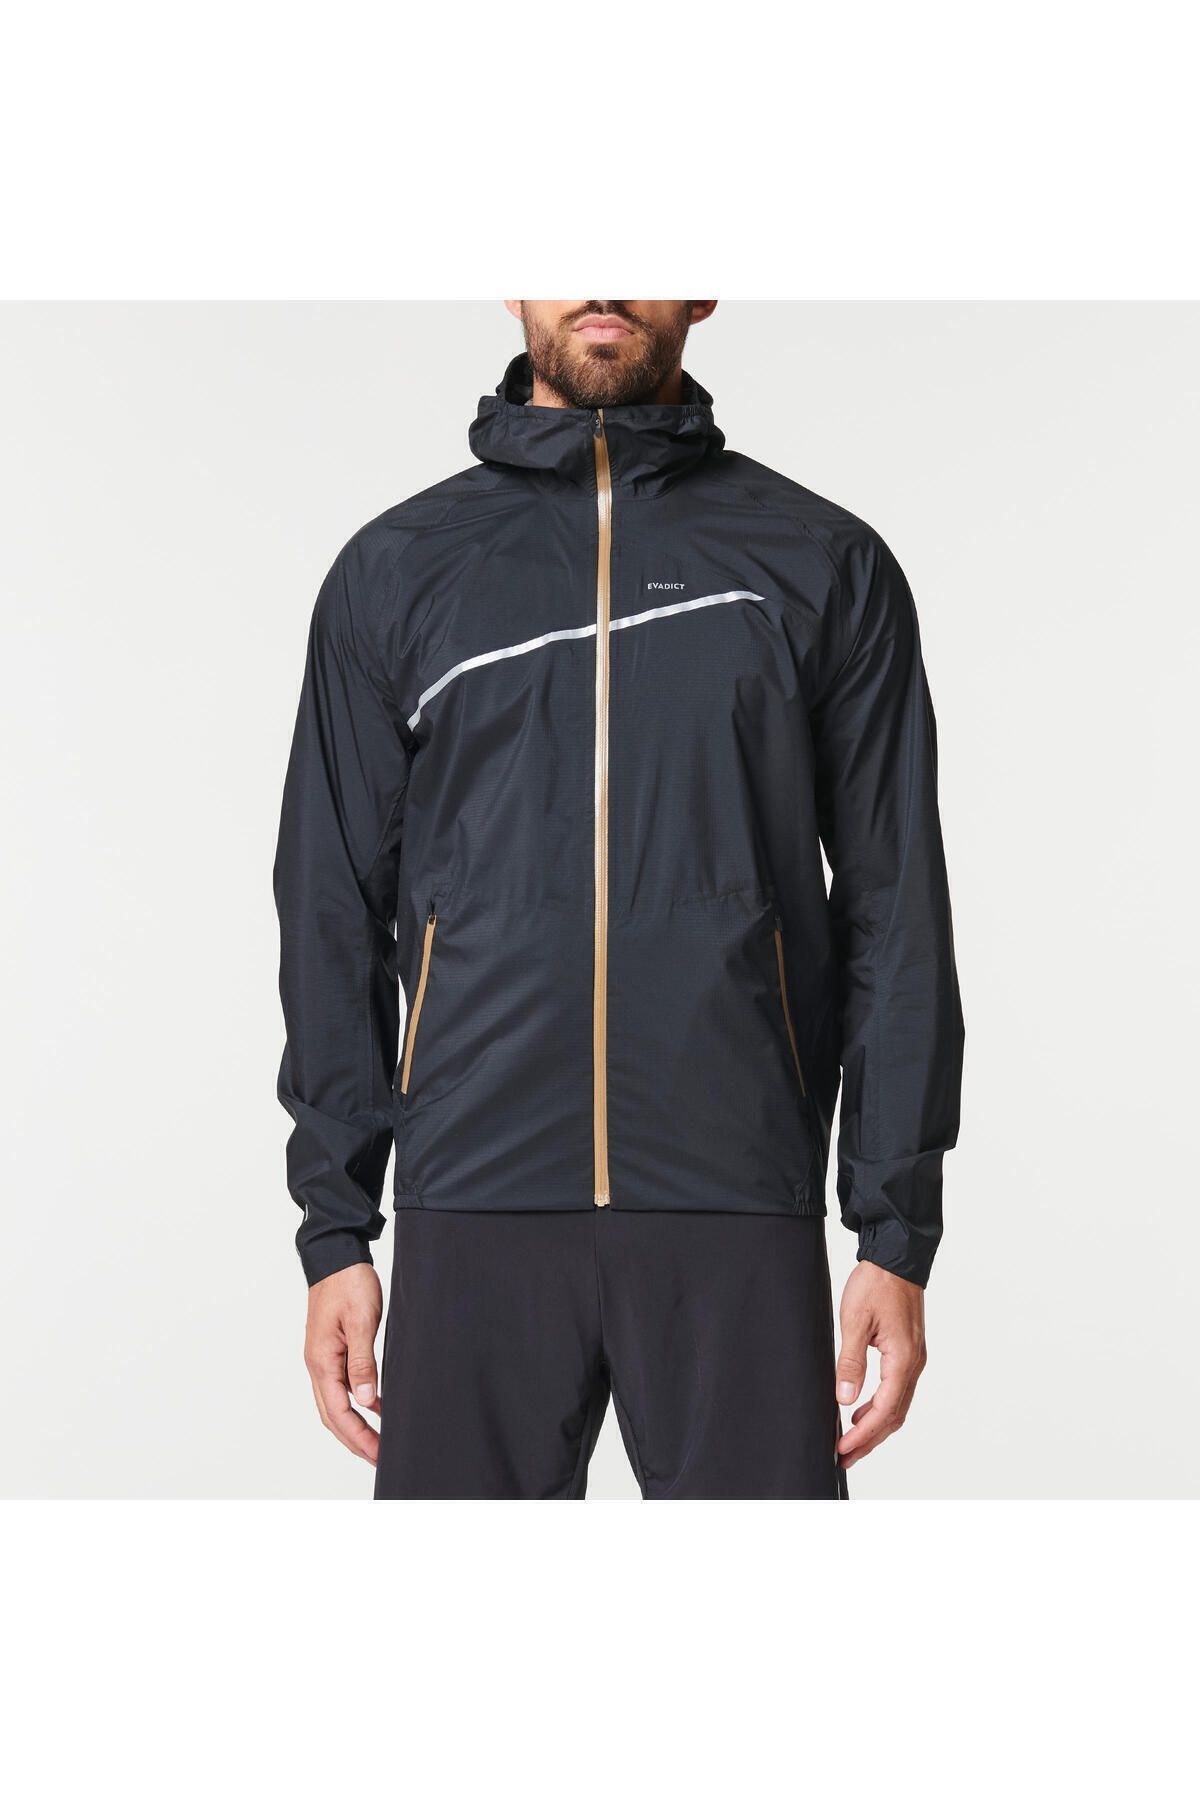 Decathlon Erkek Arazi Koşusu Ceketi - Siyah / Bronz